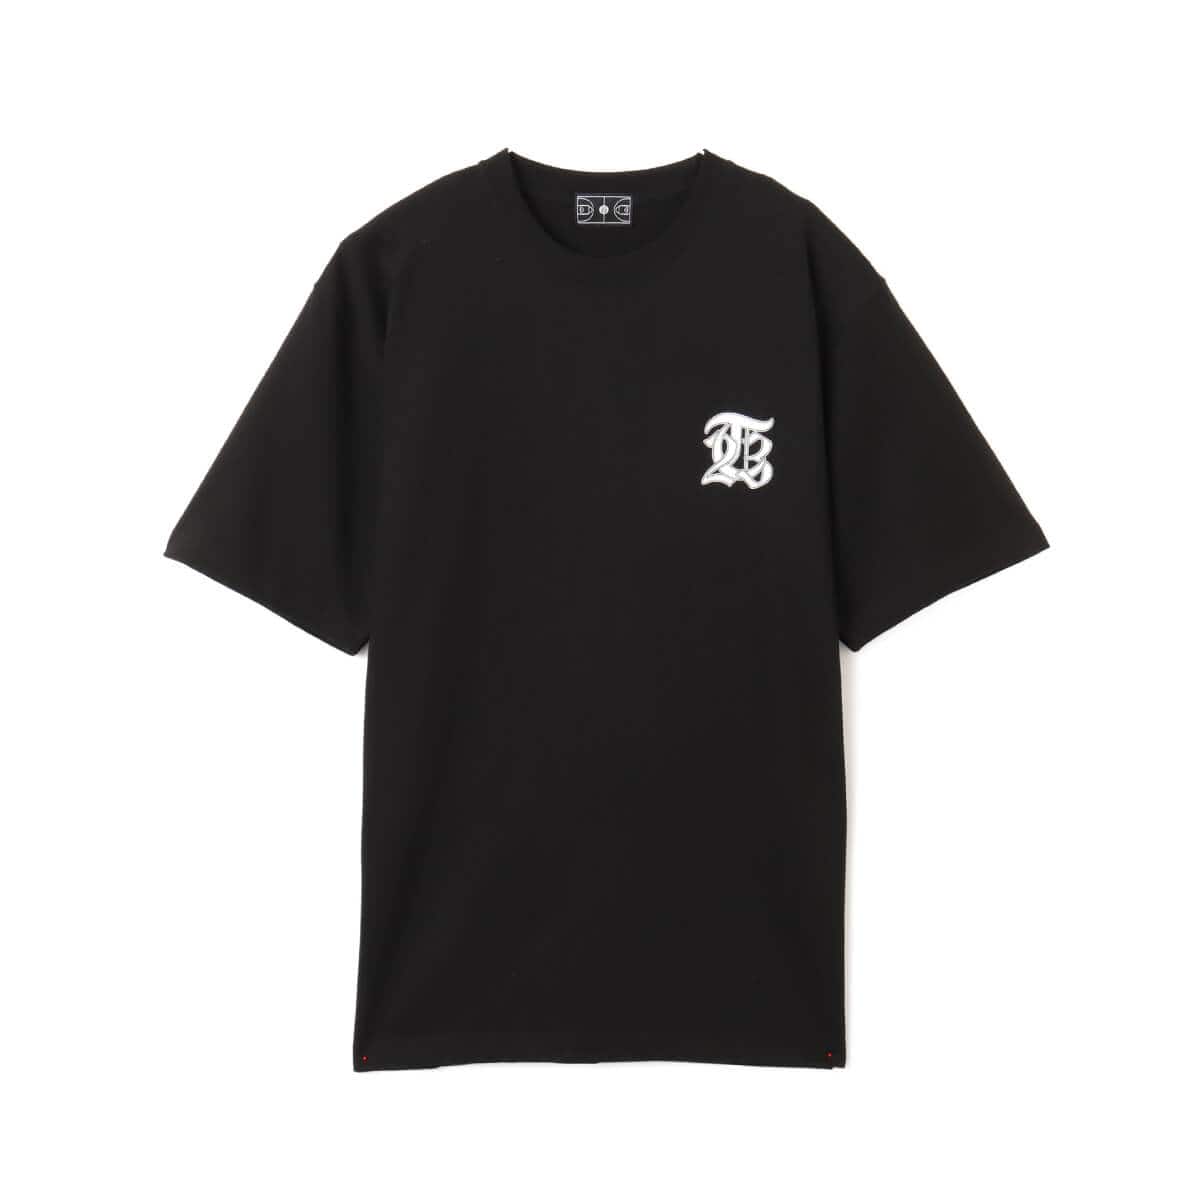 TOKYO 23 OLD ENGLISH LOGO T-shirt BLACK